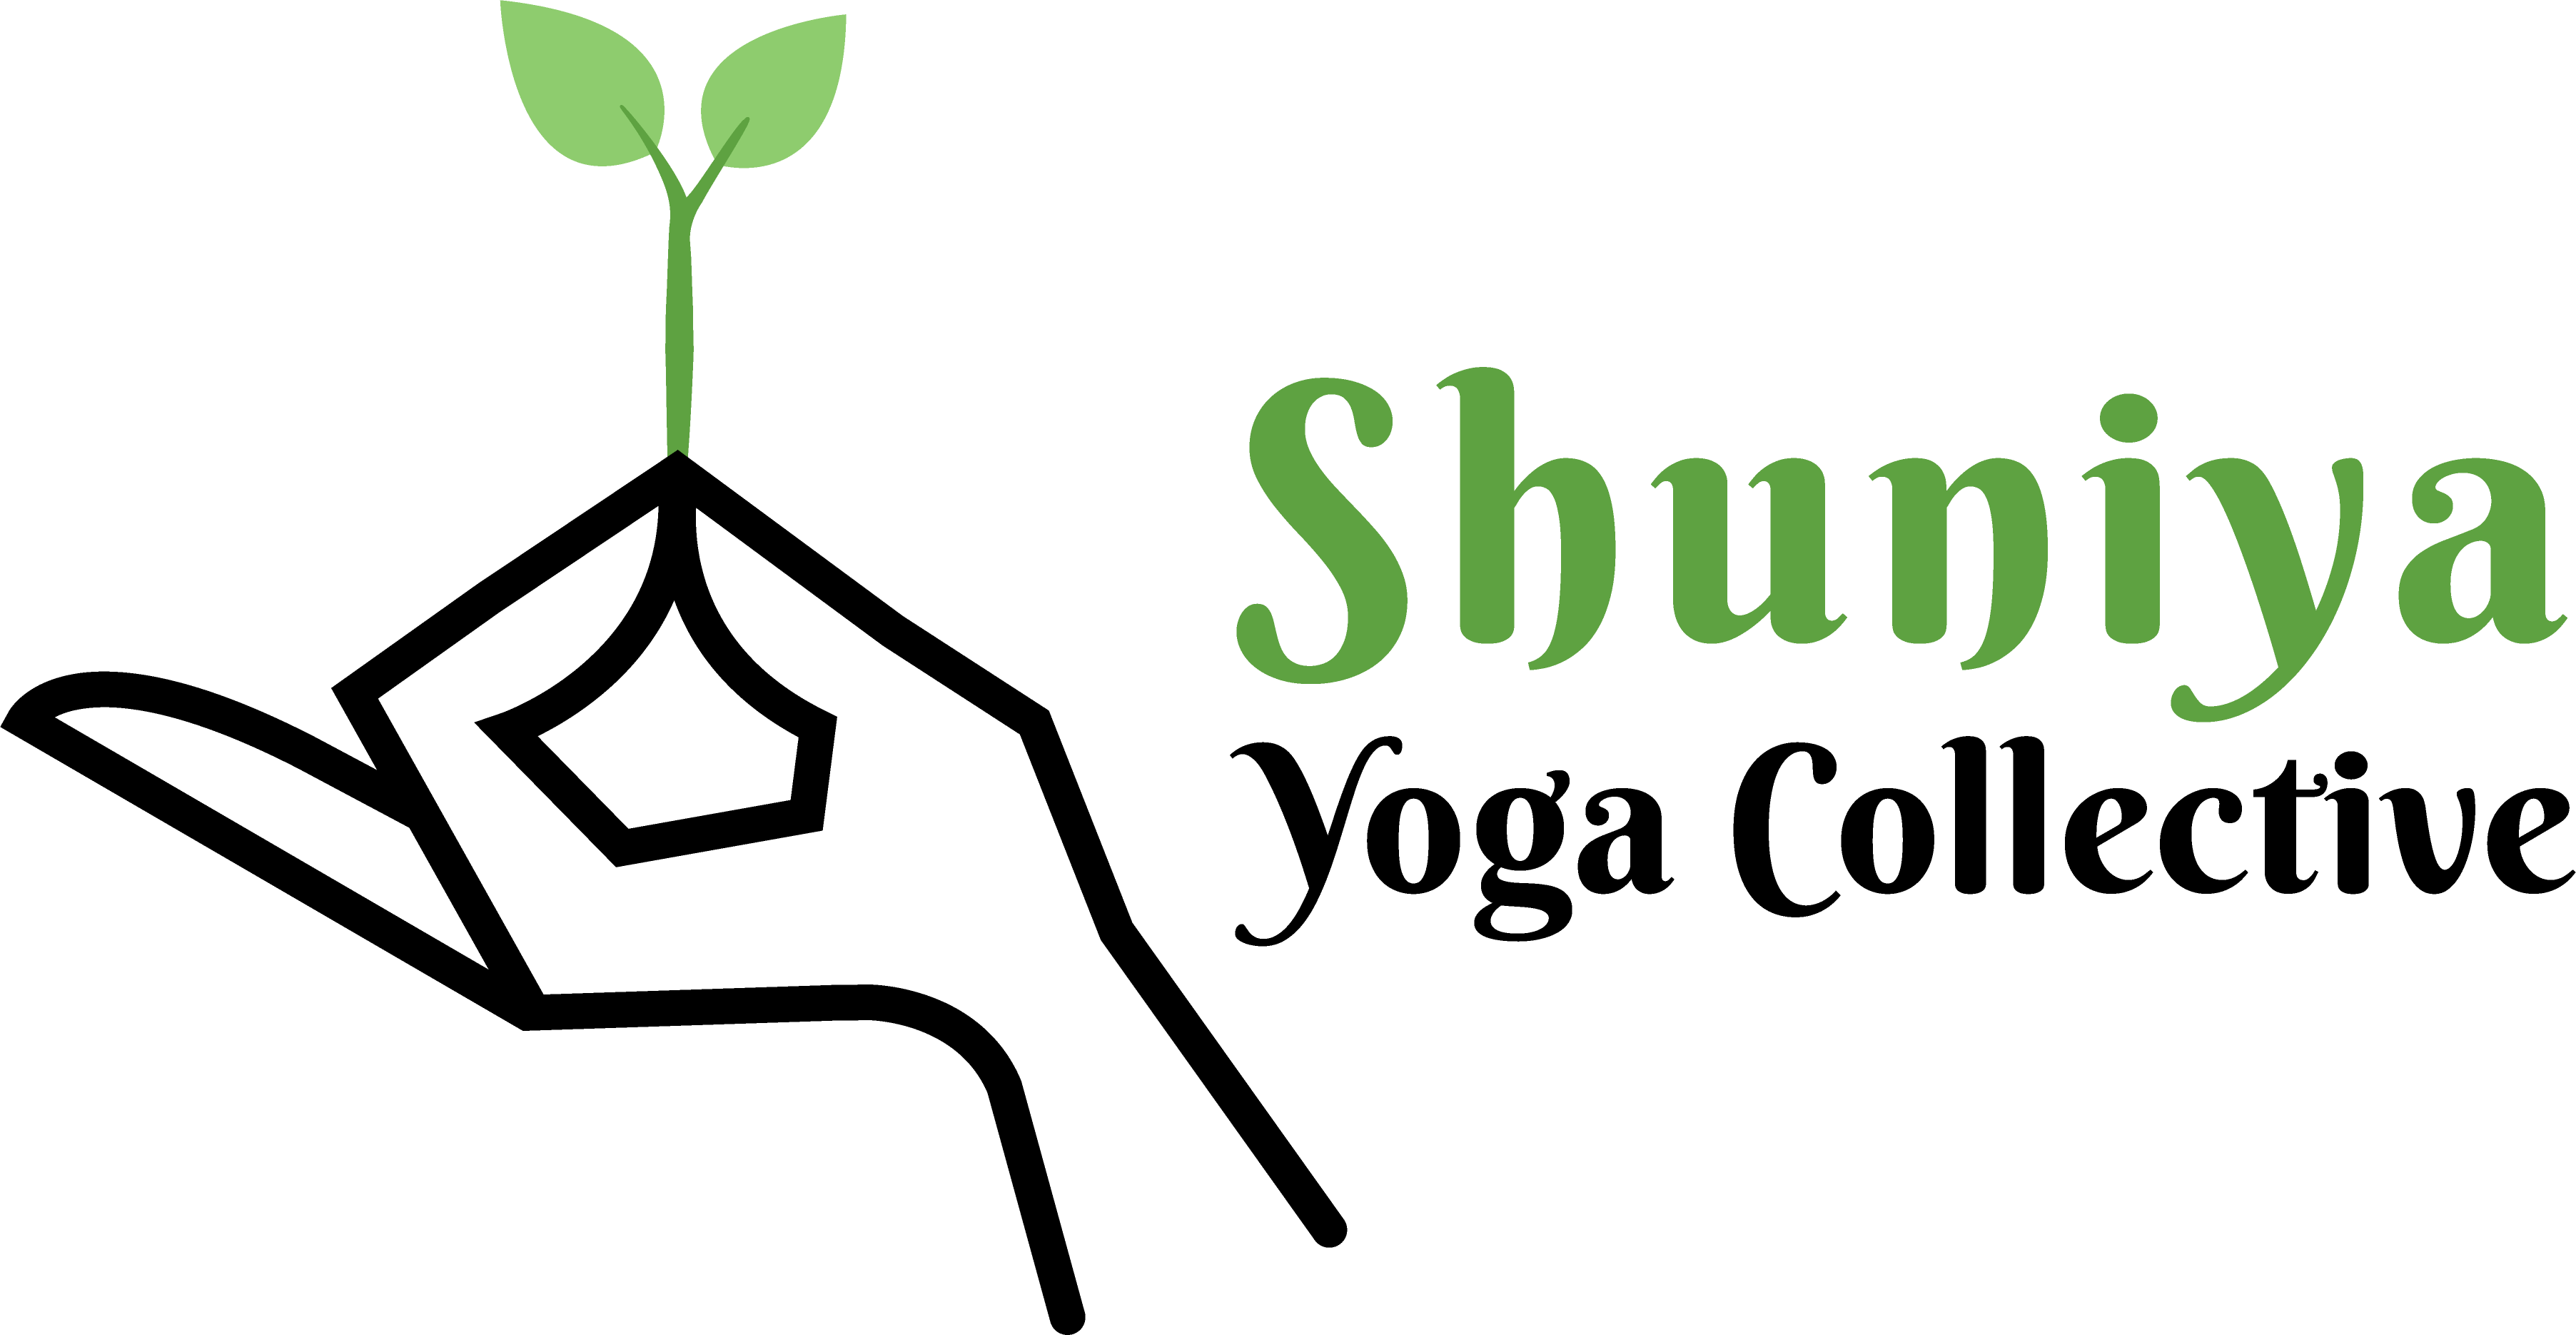 Shuniya Yoga Collective